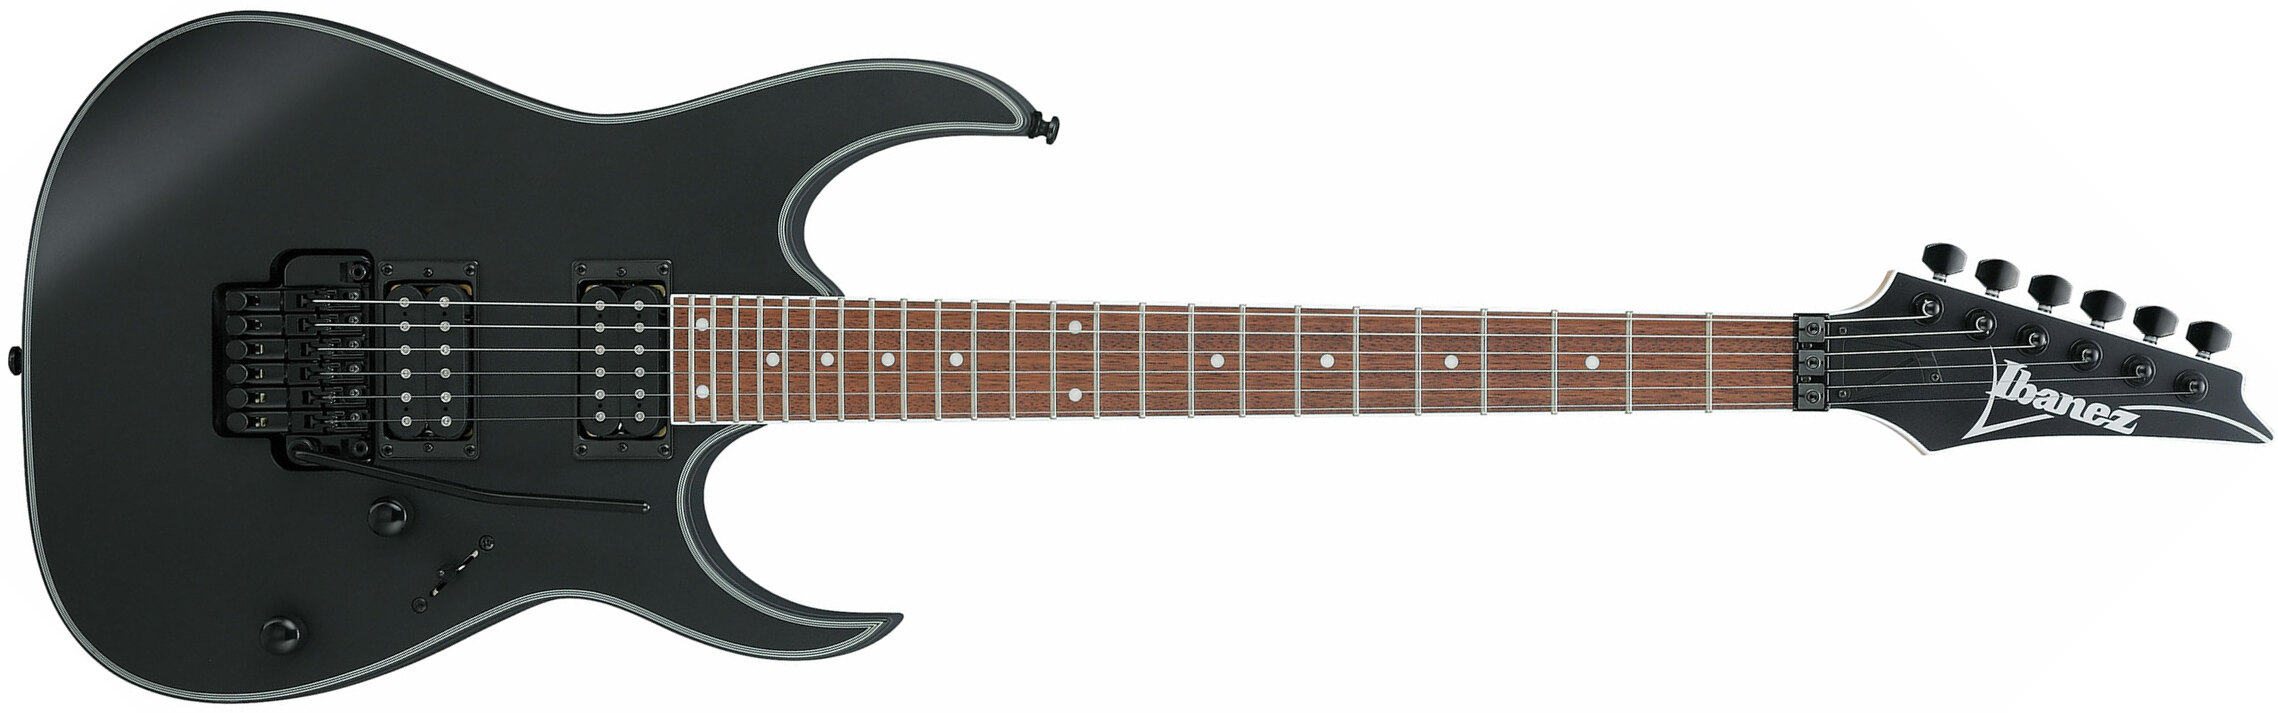 Ibanez Rg320exz Bkf Standard Fr Hh Jat - Black Flat - Guitare Électrique Forme Str - Main picture